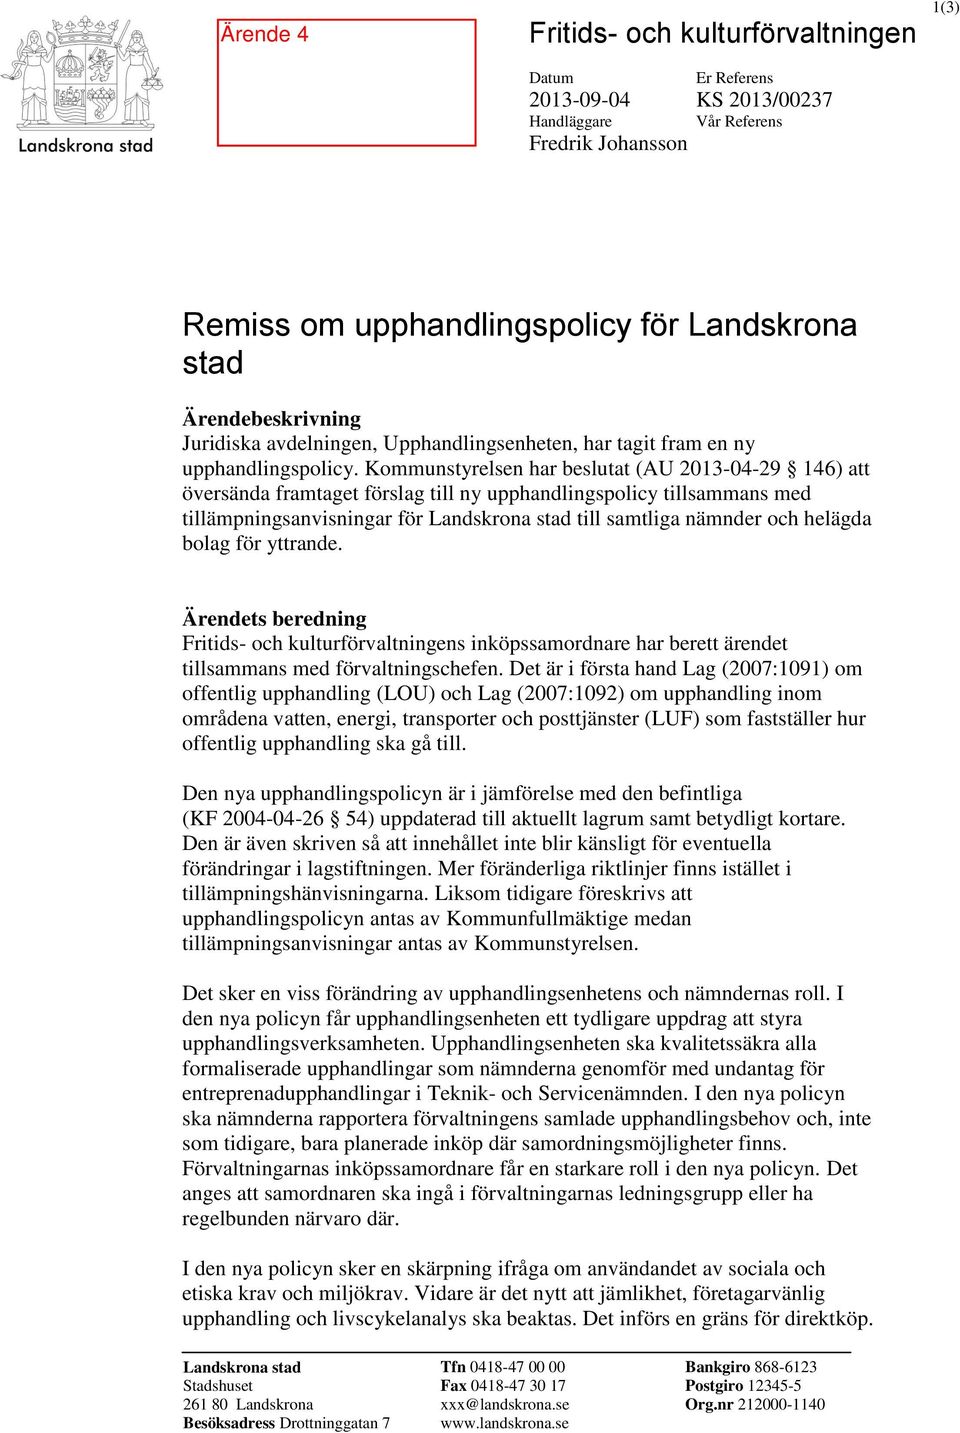 Kommunstyrelsen har beslutat (AU 2013-04-29 146) att översända framtaget förslag till ny upphandlingspolicy tillsammans med tillämpningsanvisningar för Landskrona stad till samtliga nämnder och